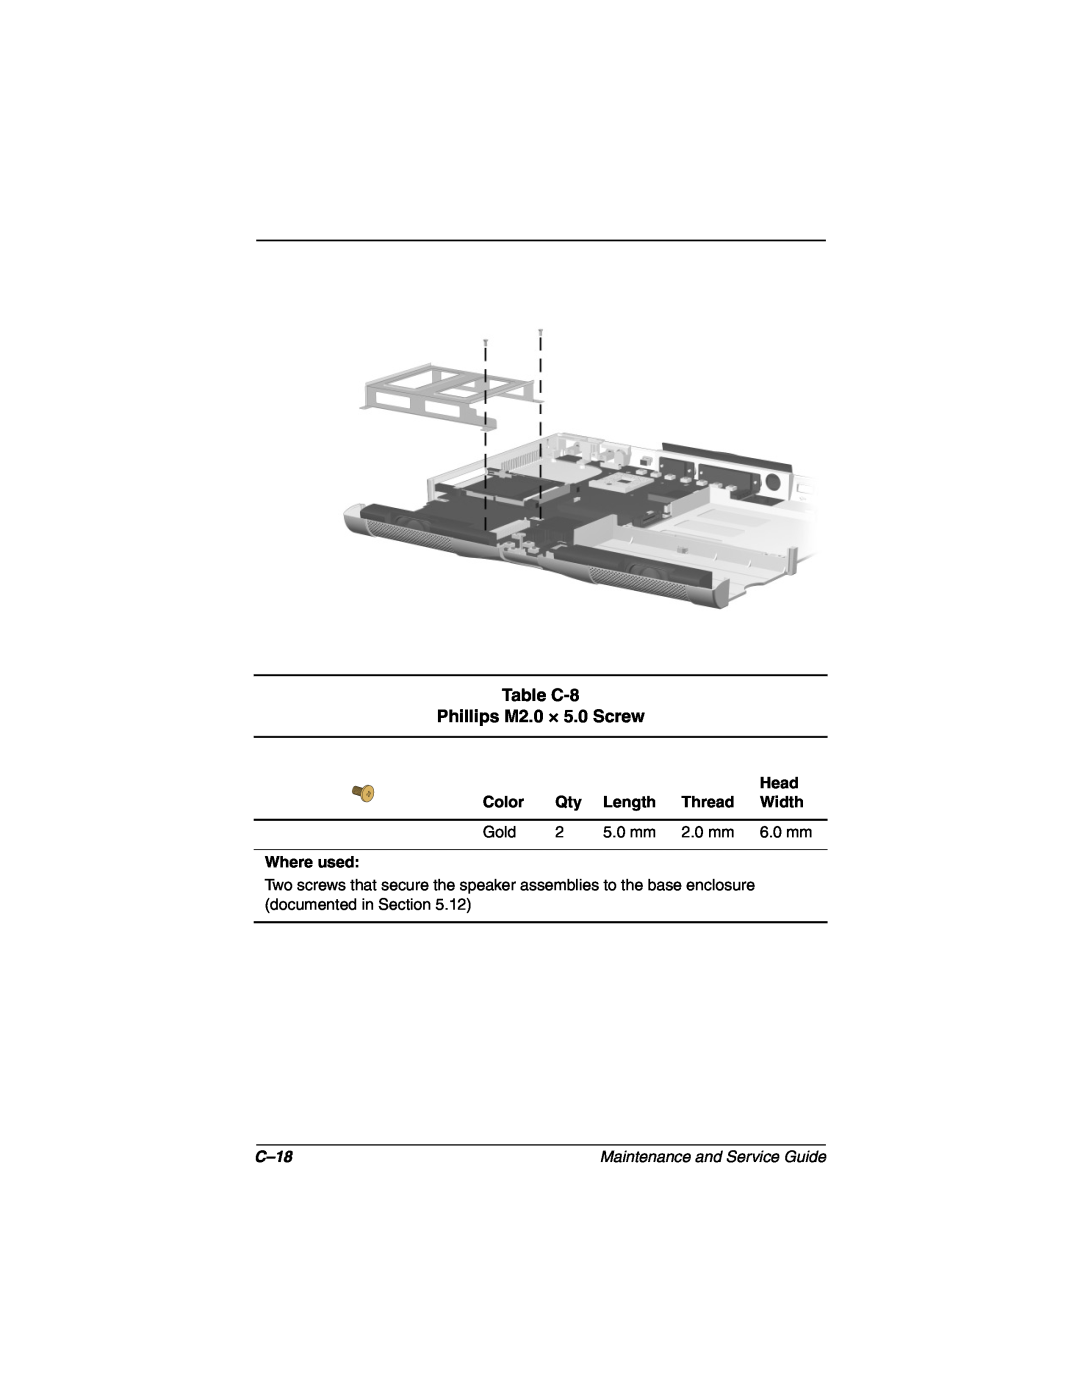 Compaq N160 manual Table C-8 Phillips M2.0 × 5.0 Screw, C-18 